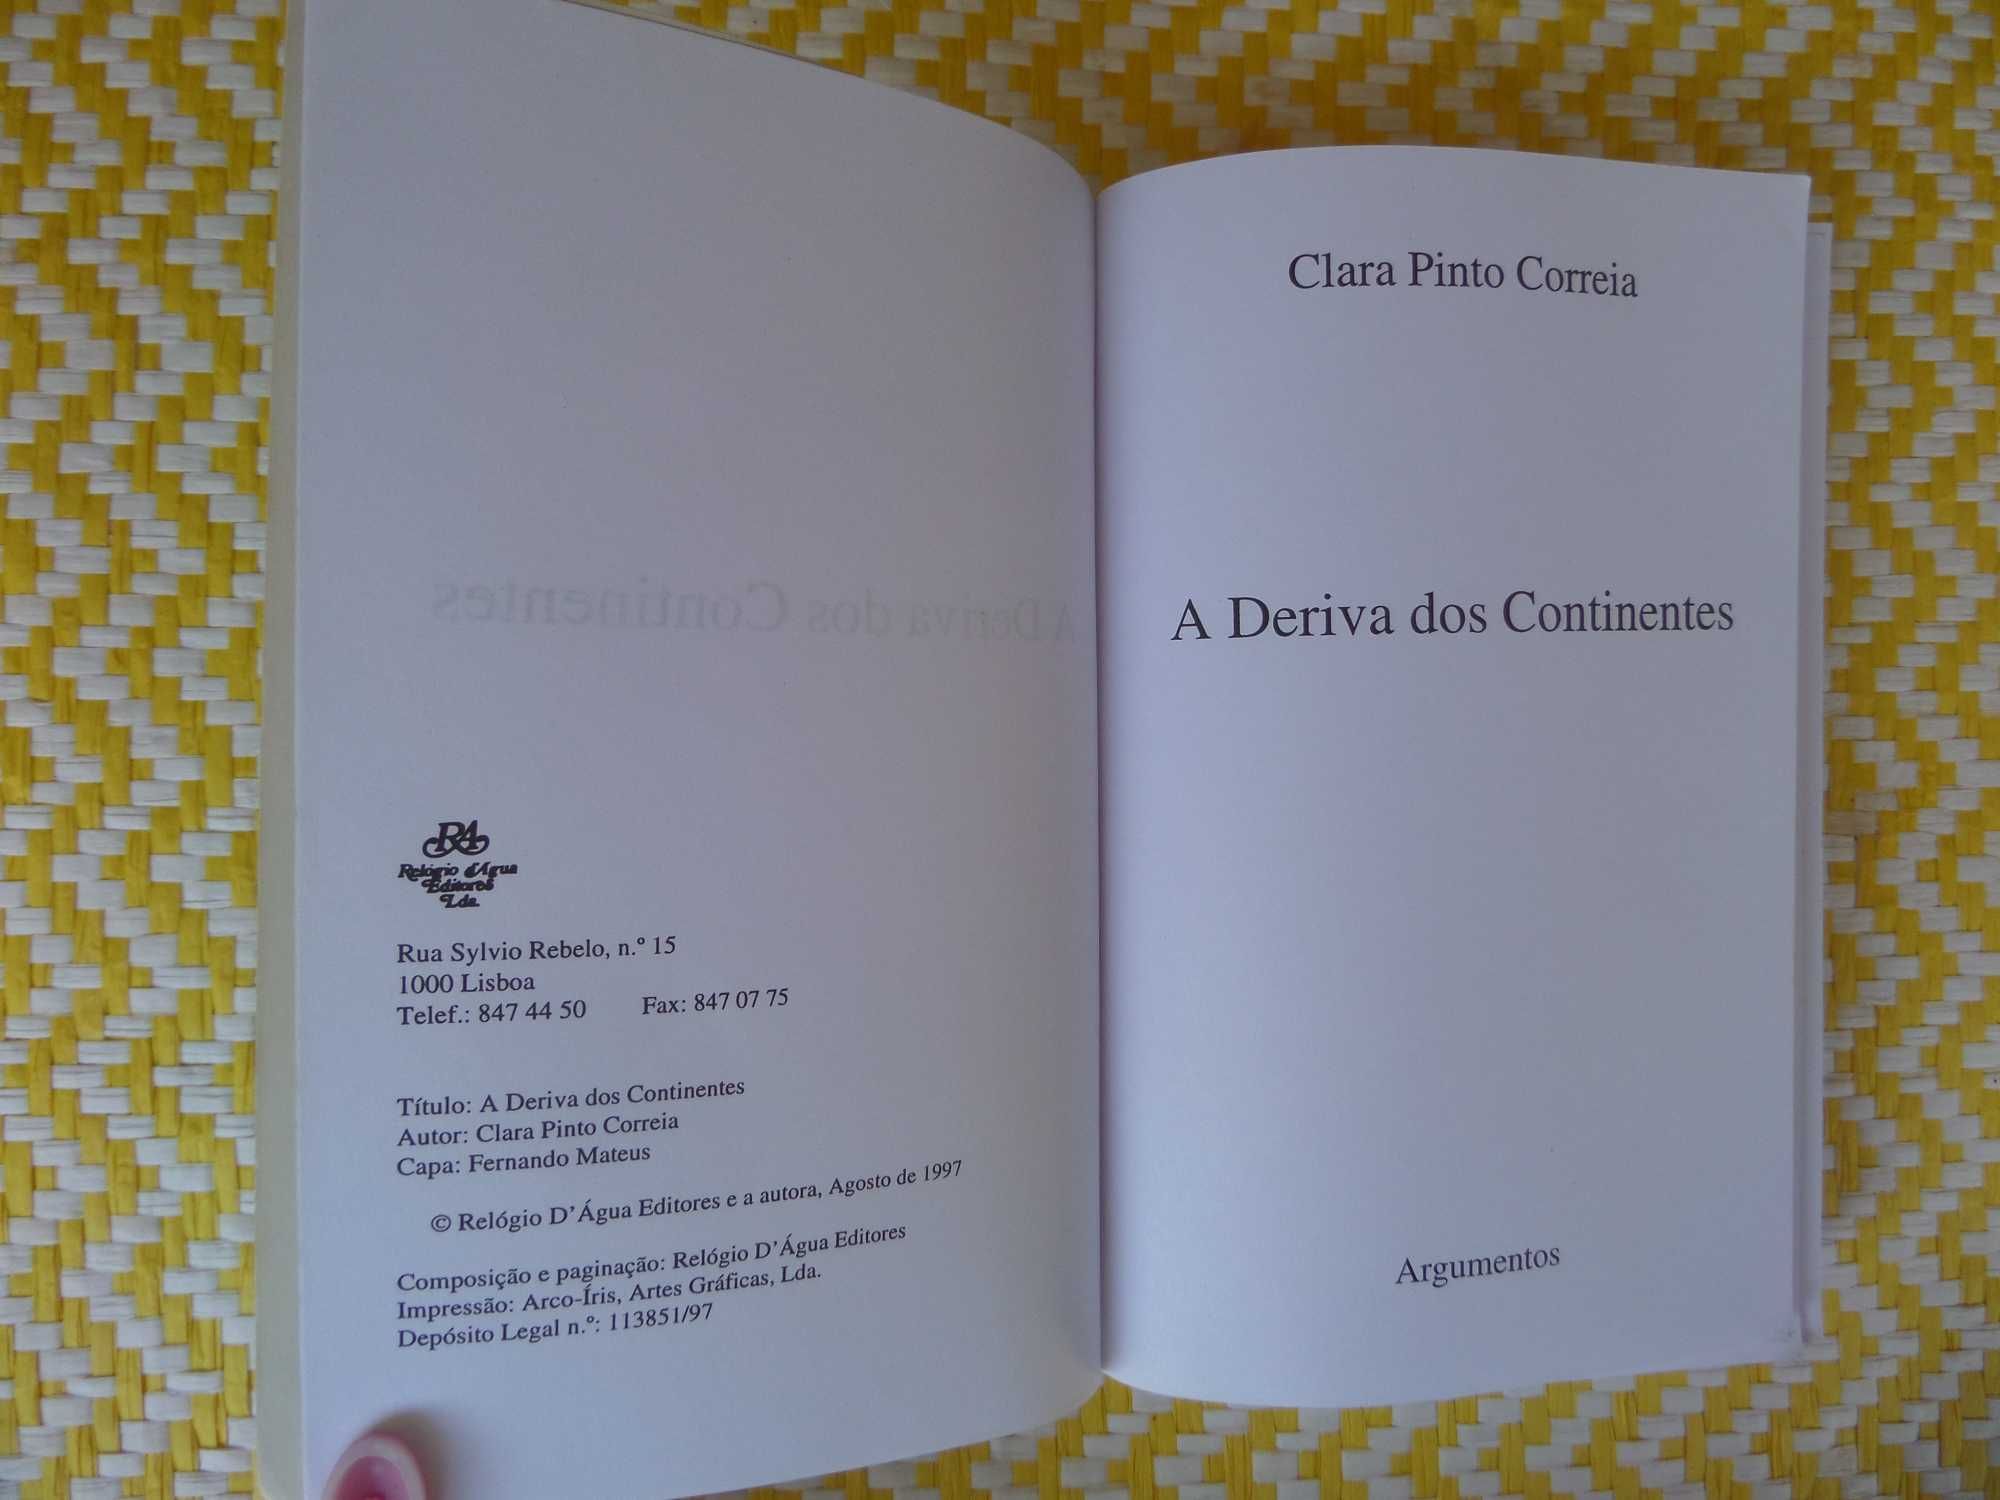 A Deriva dos Continentes
de Clara Pinto Correia